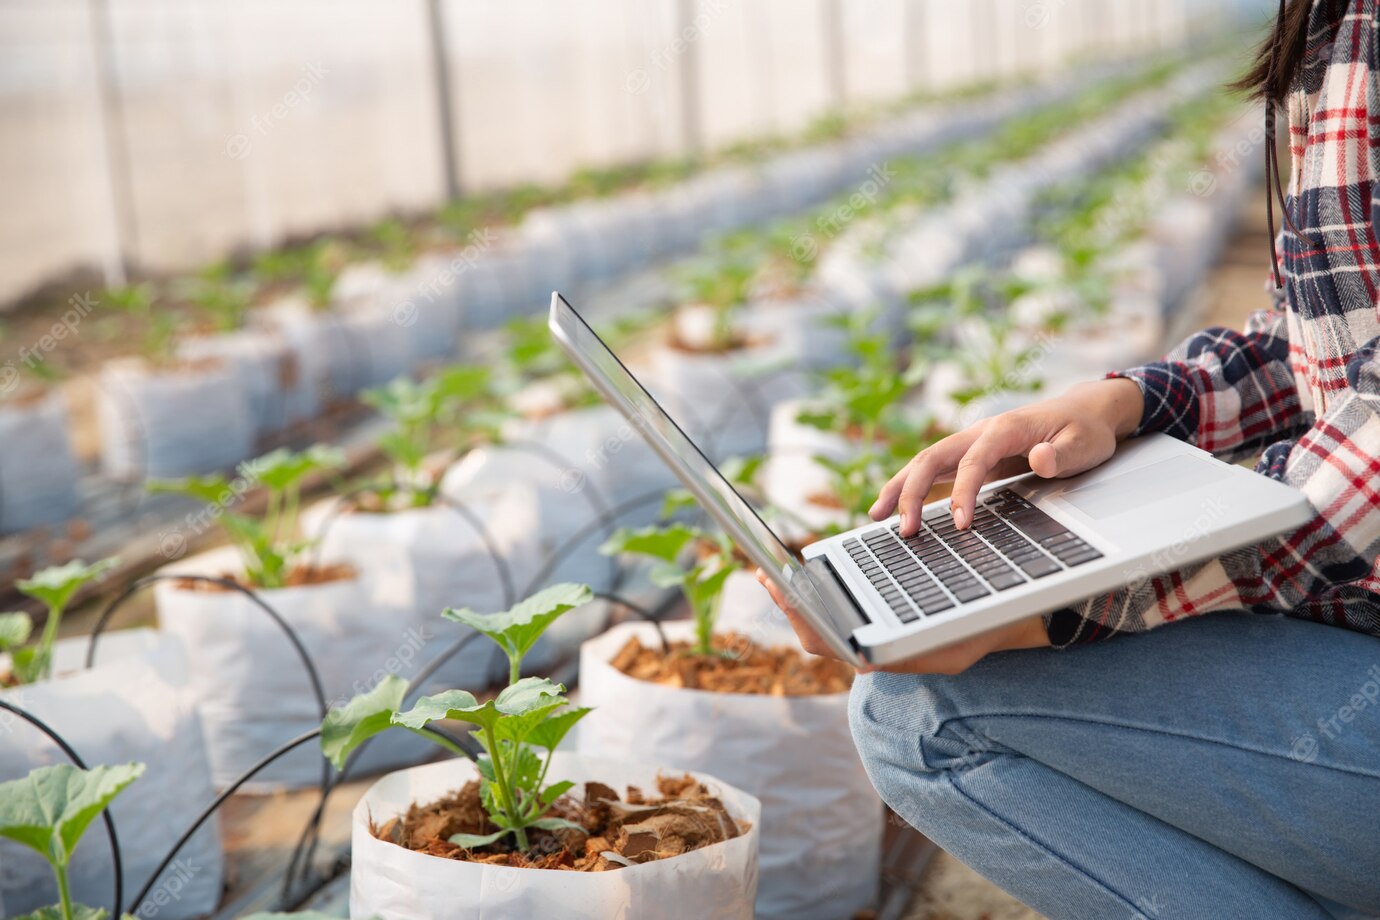 Интернет вещей в сельском хозяйстве: применение технологий для увеличения урожайности и оптимизации пр